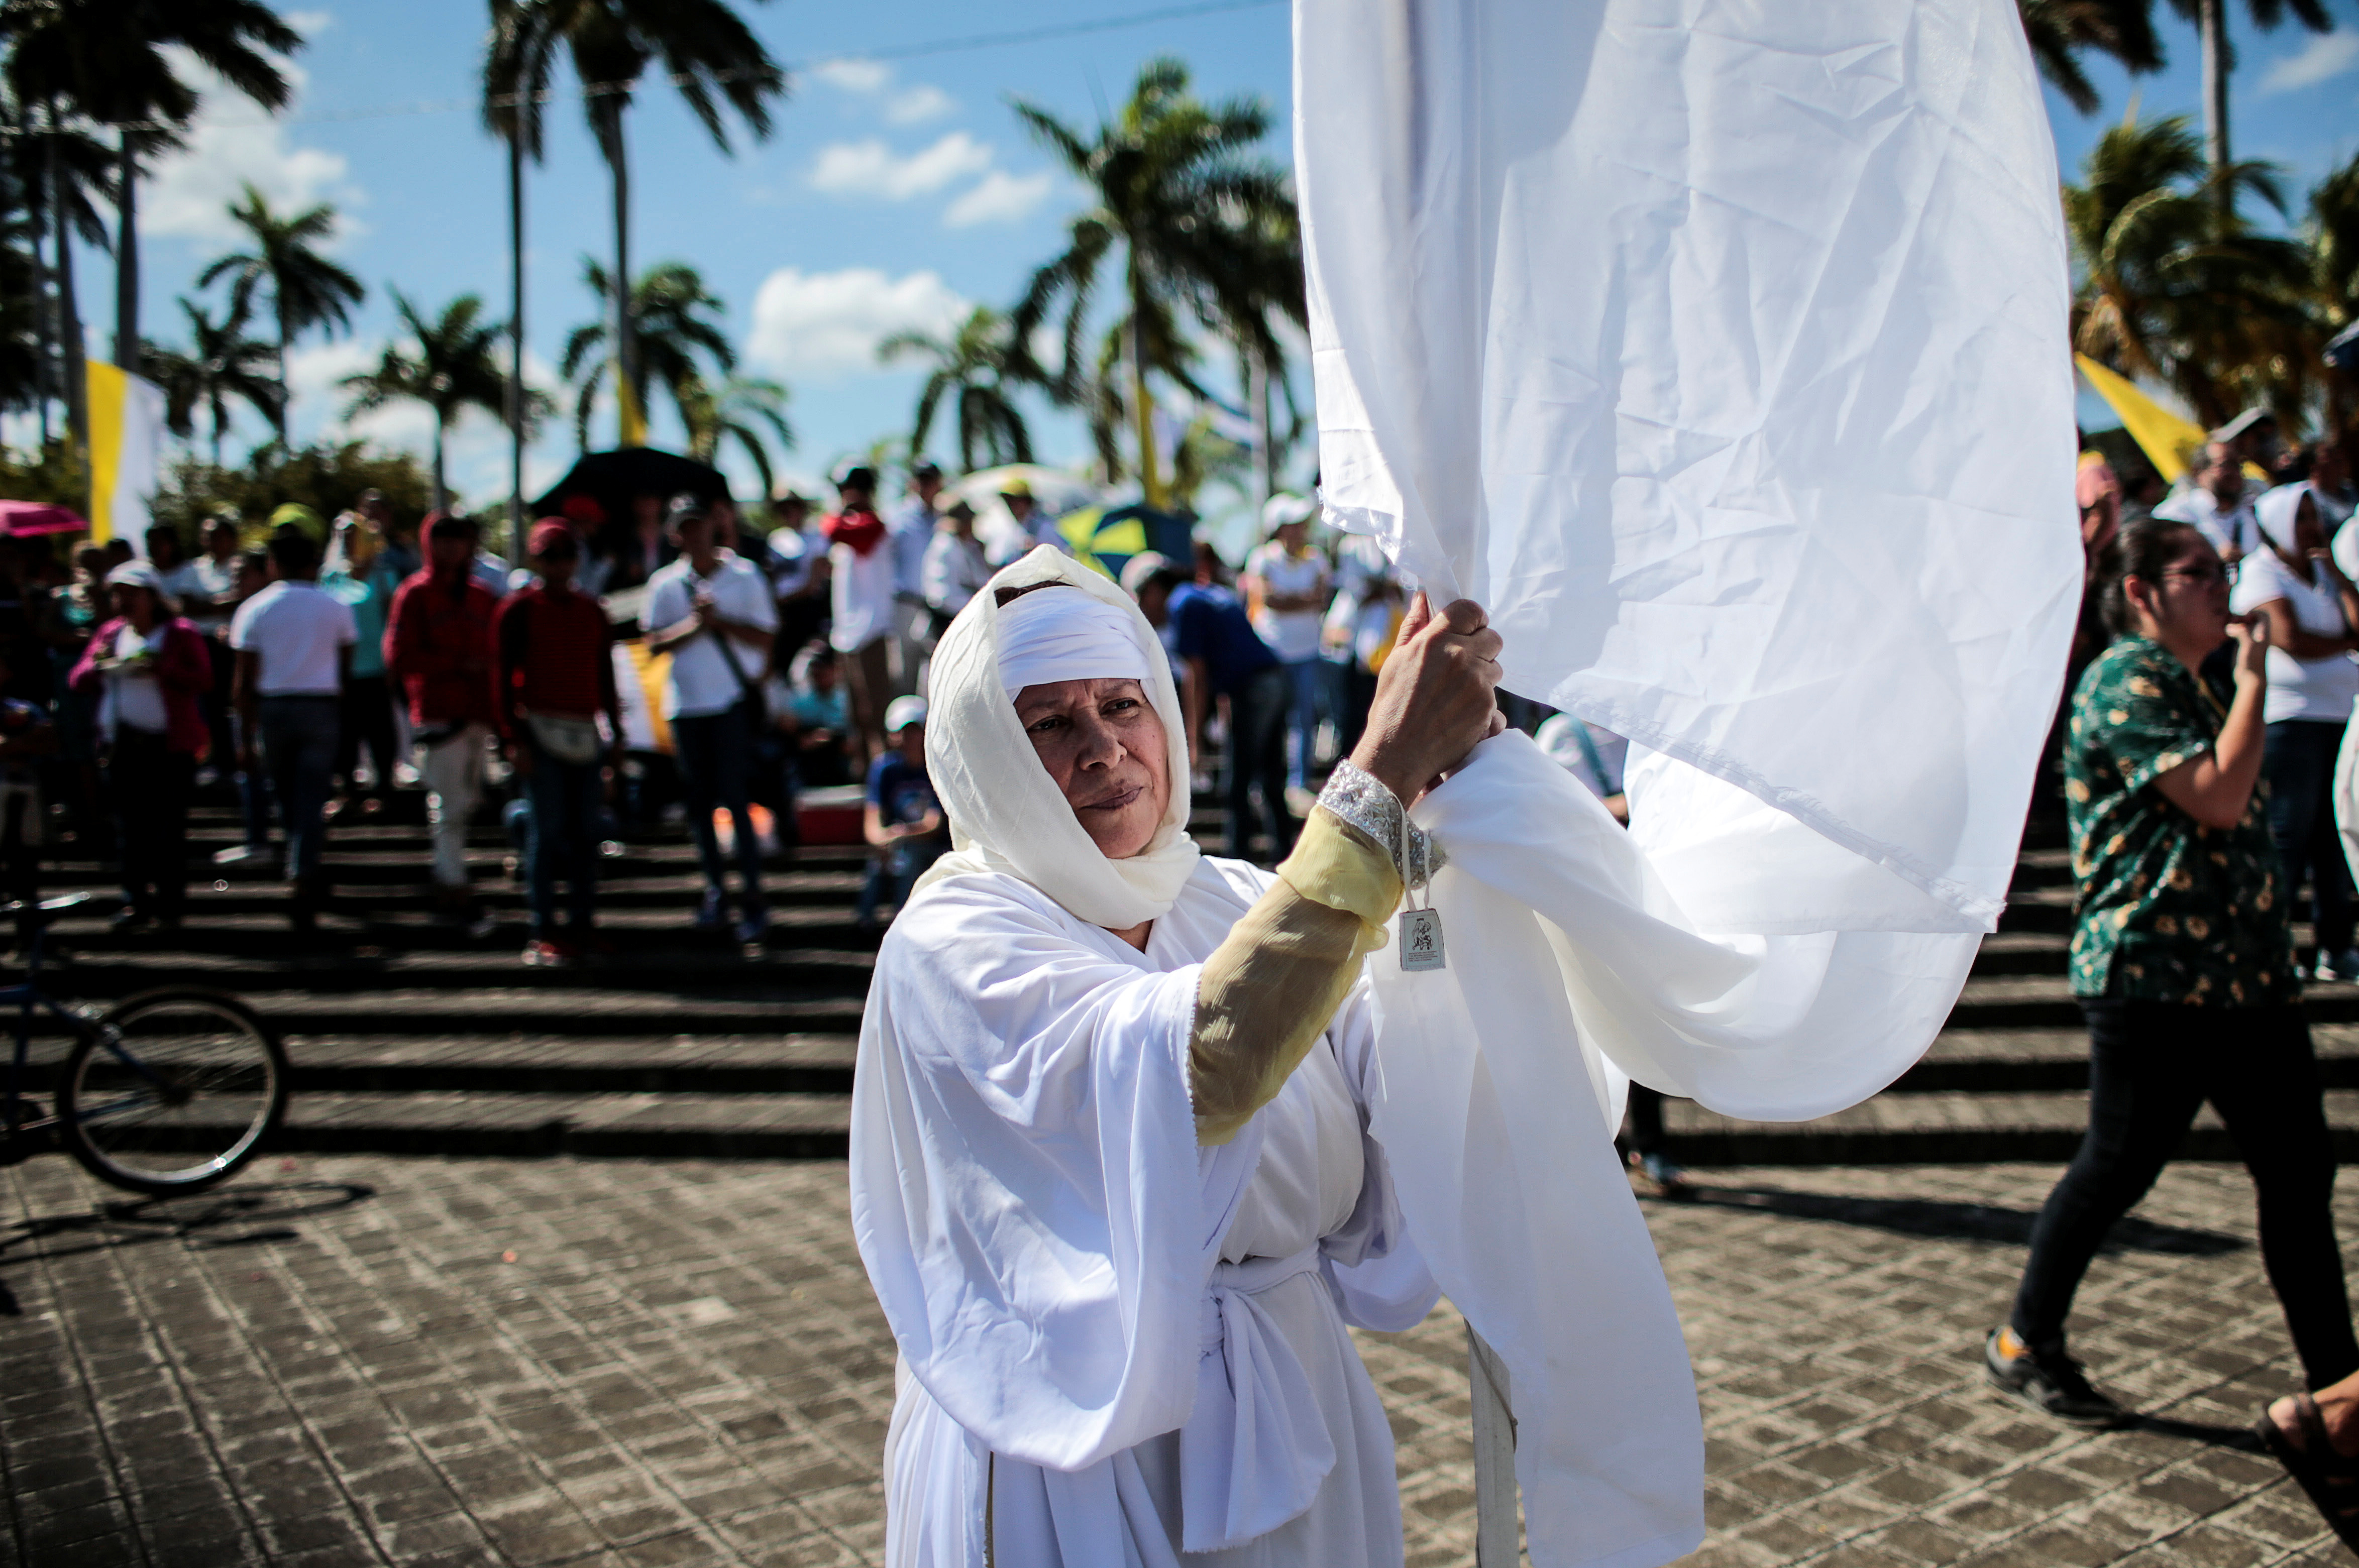 La procesión convocada para mañana con la imagen de la virgen de Fátima saldría del colegio Cristo Rey hasta el atrio de la Catedral de Managua (REUTERS/Oswaldo Rivas)